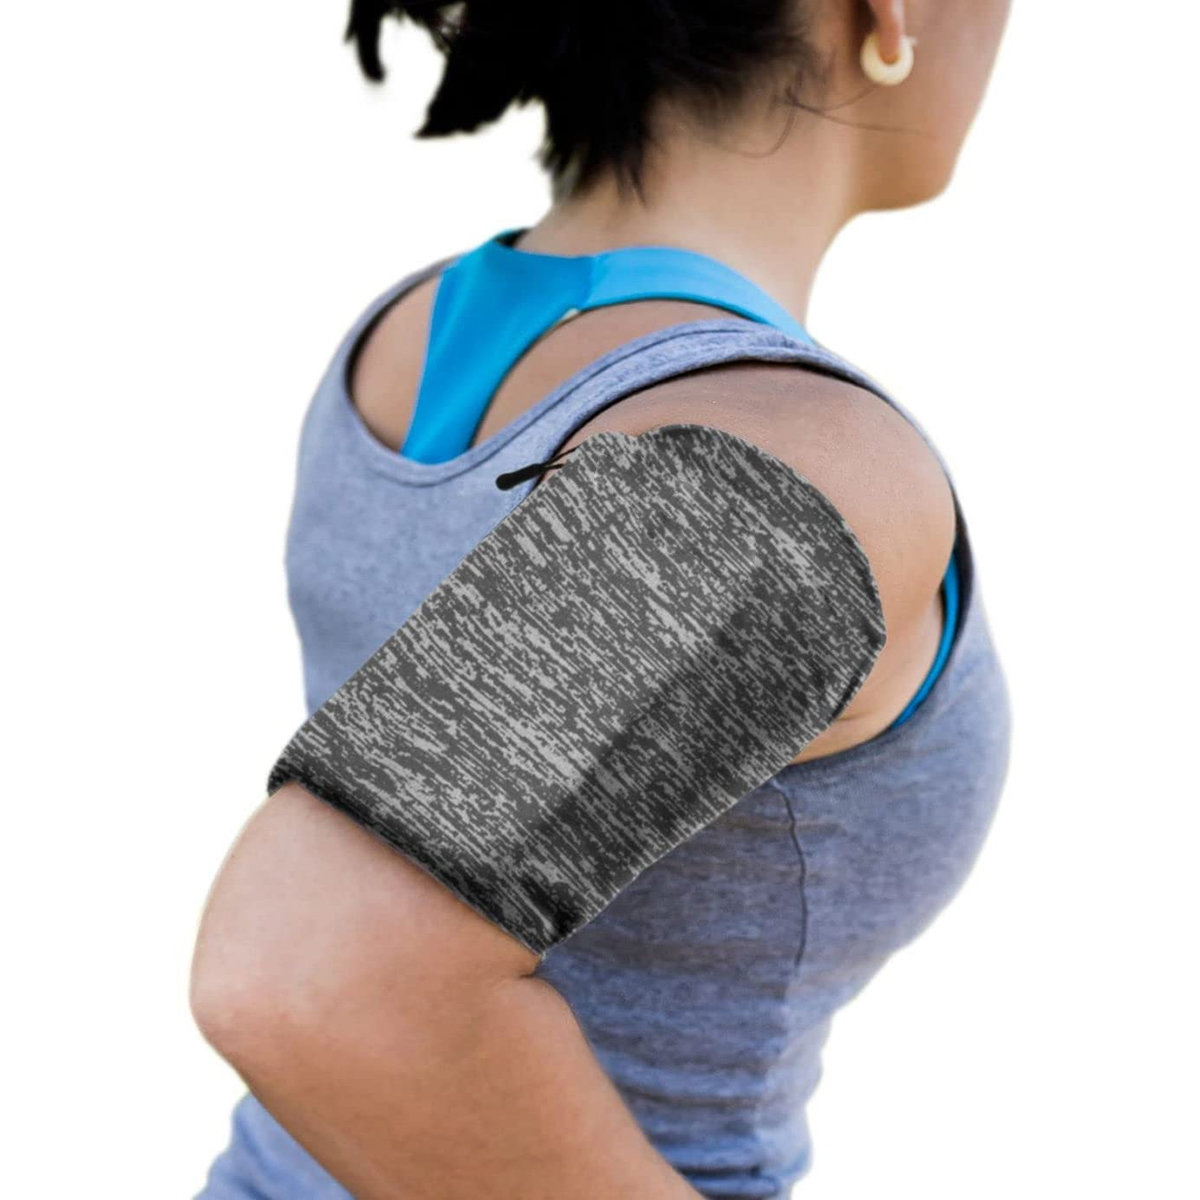 Pokrowiec Elastyczna opaska na rami do biegania Armband fitness szara BLACKBERRY DTEK50